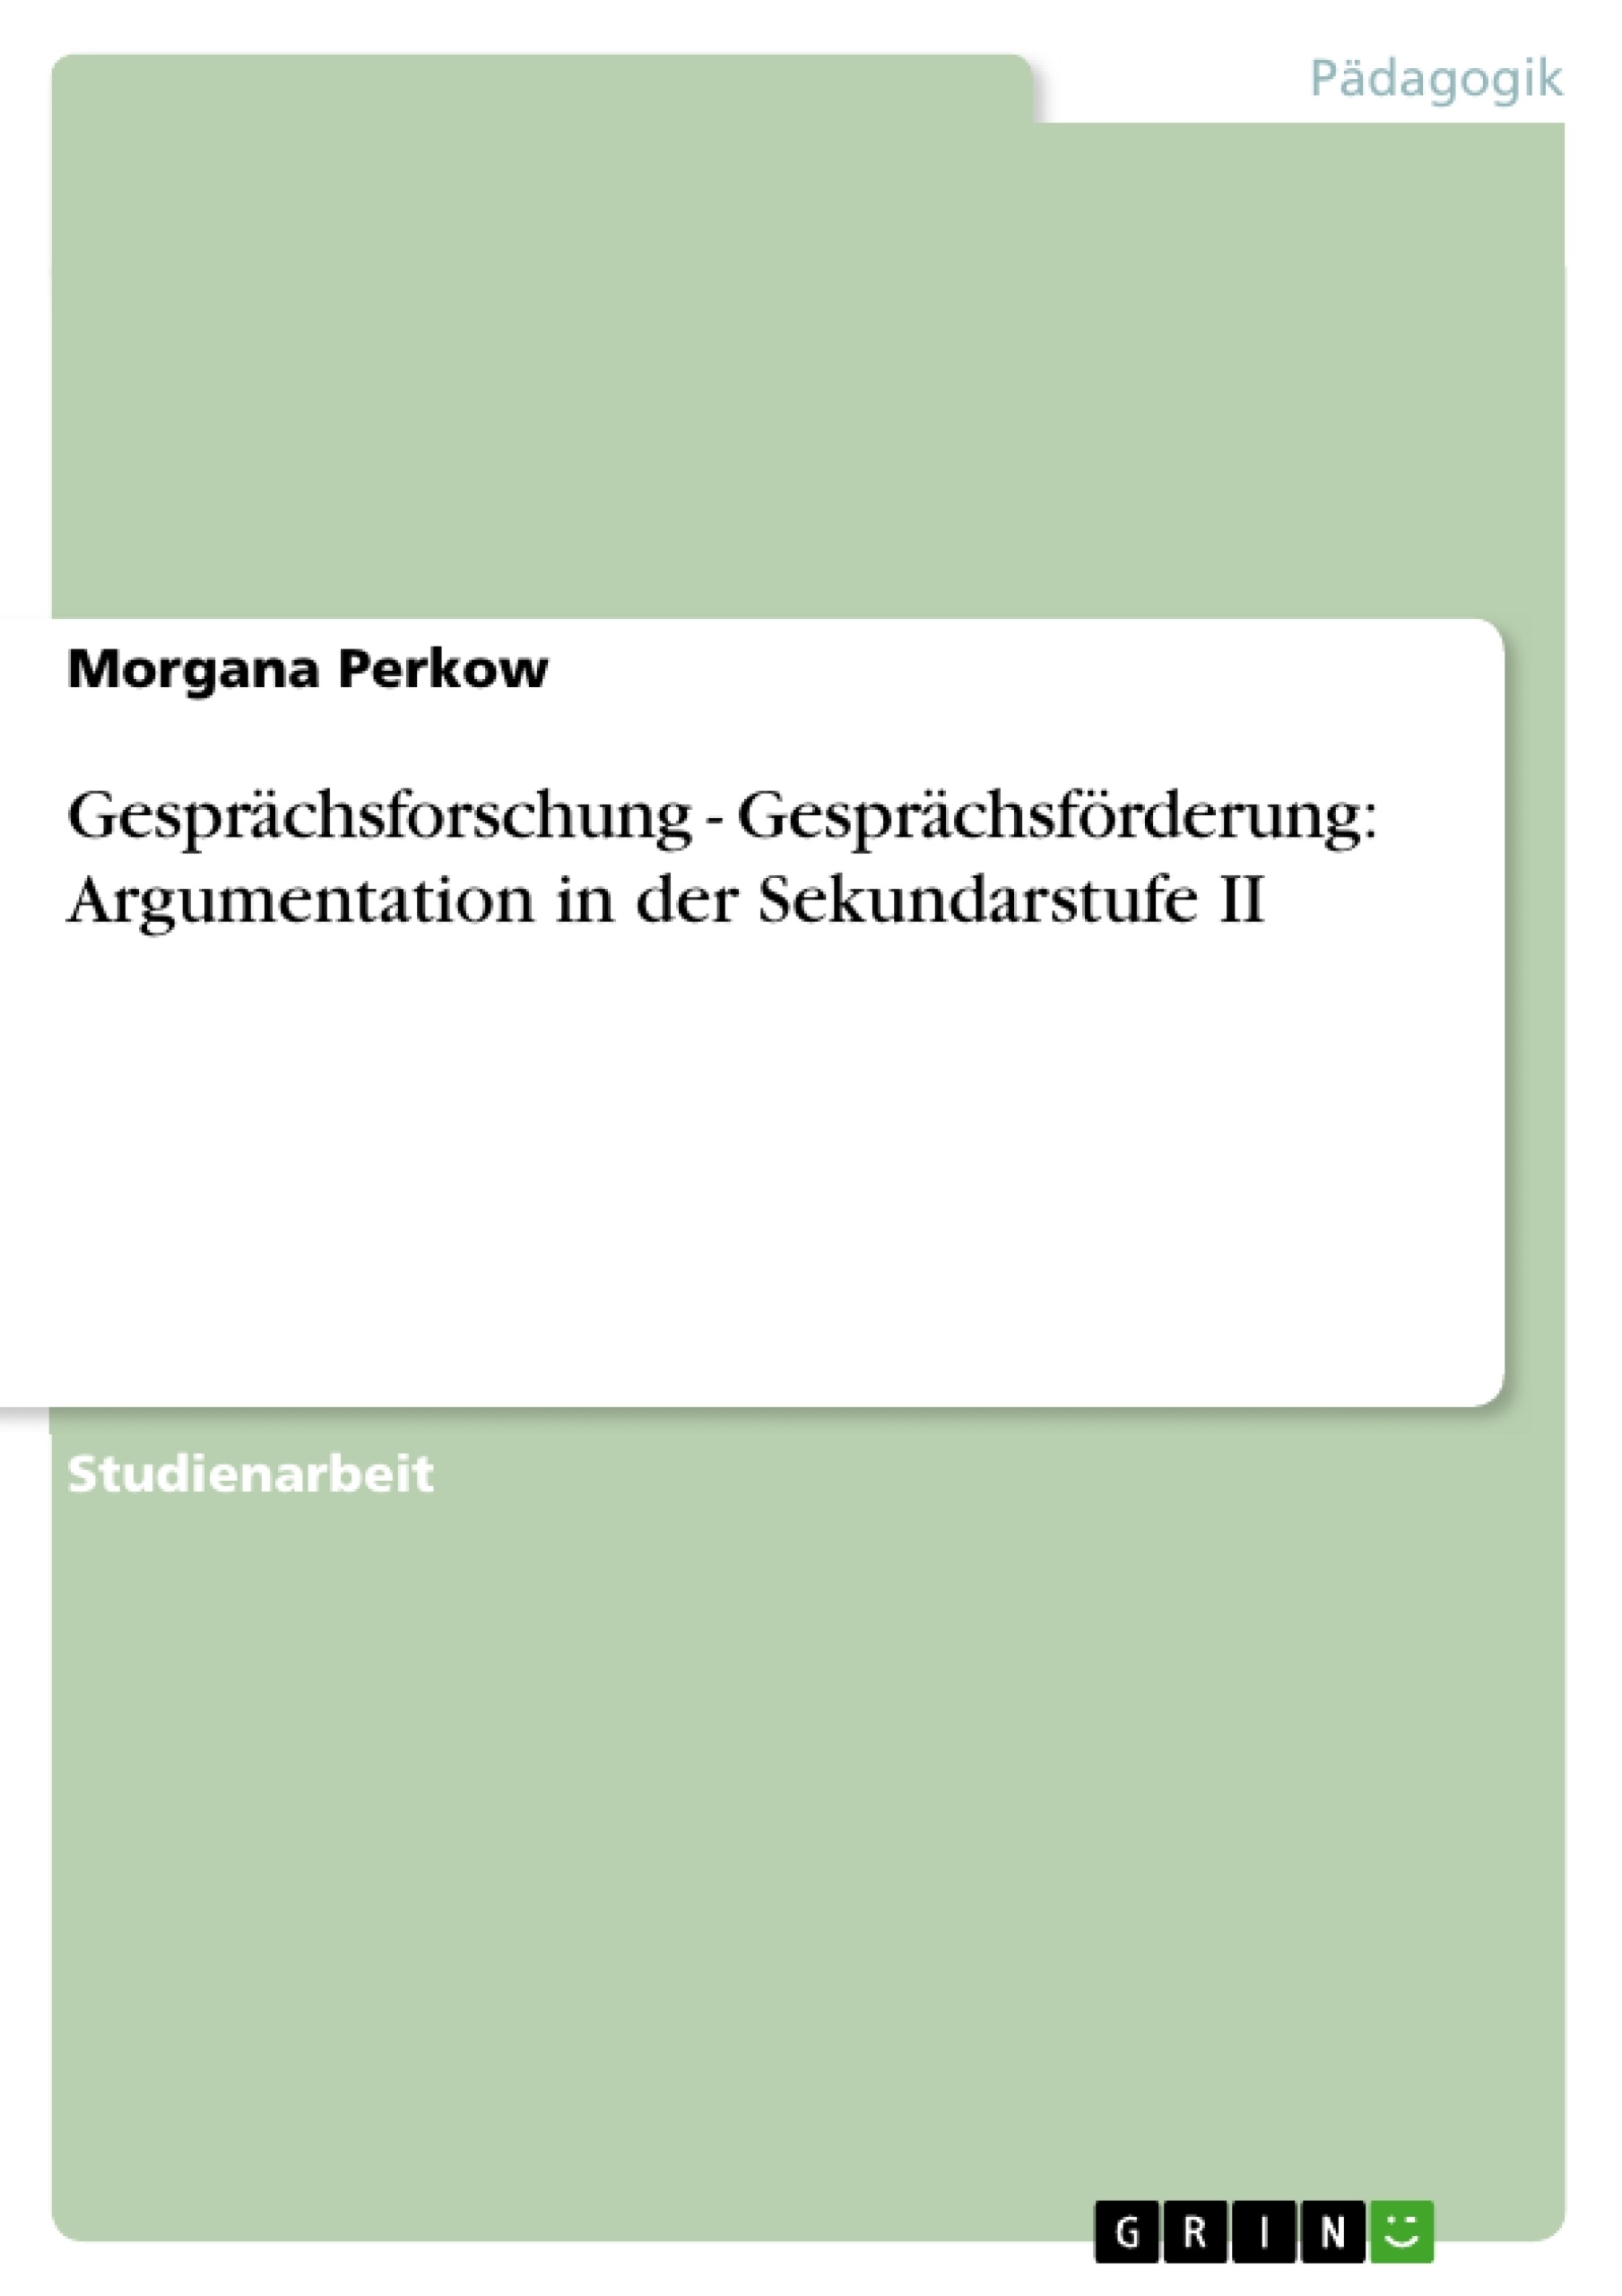 Title: Gesprächsforschung - Gesprächsförderung: Argumentation in der Sekundarstufe II